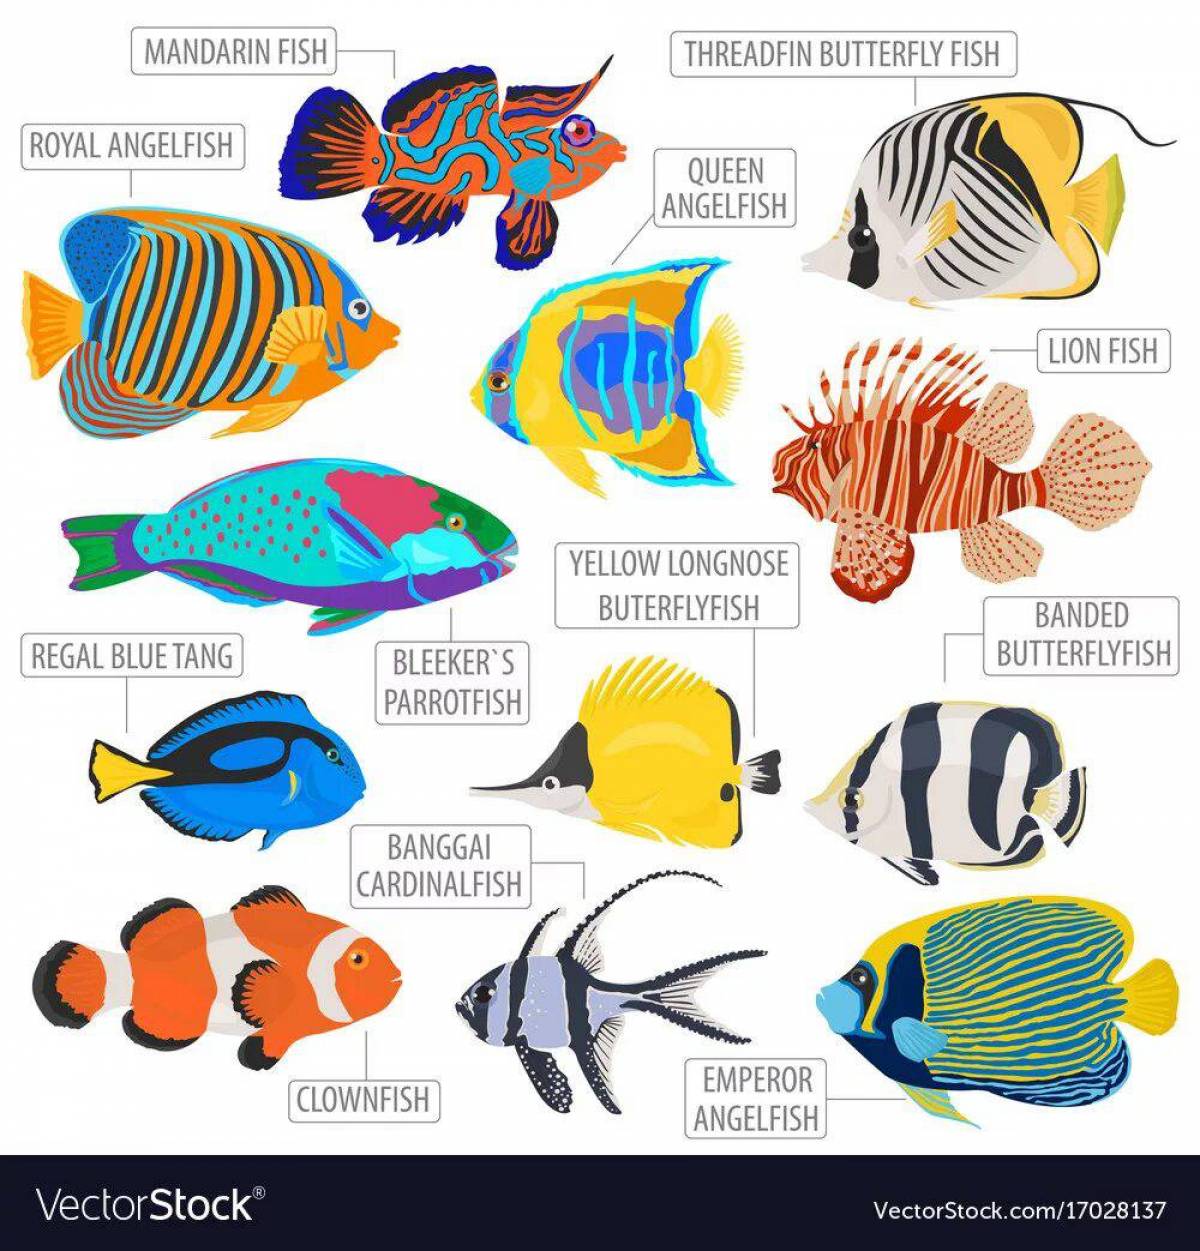 Аквариумные рыбки с названиями для детей #10